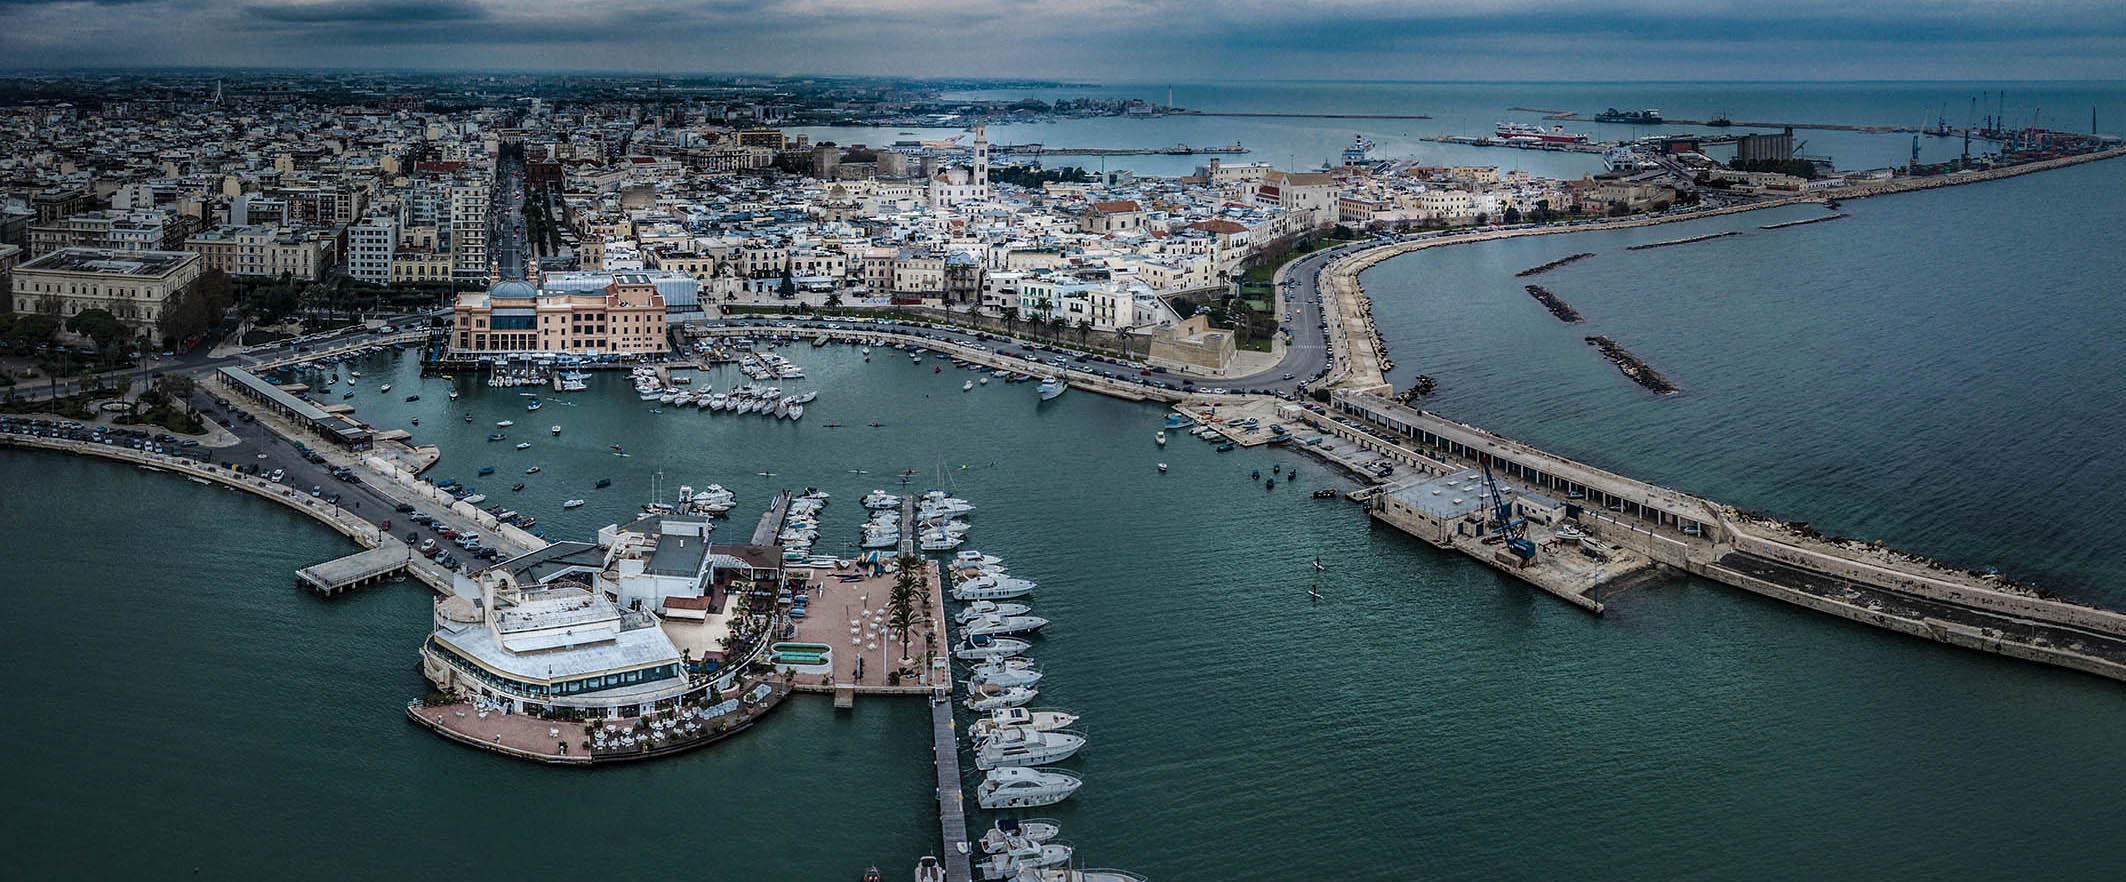 Immagine di Bari dall'alto